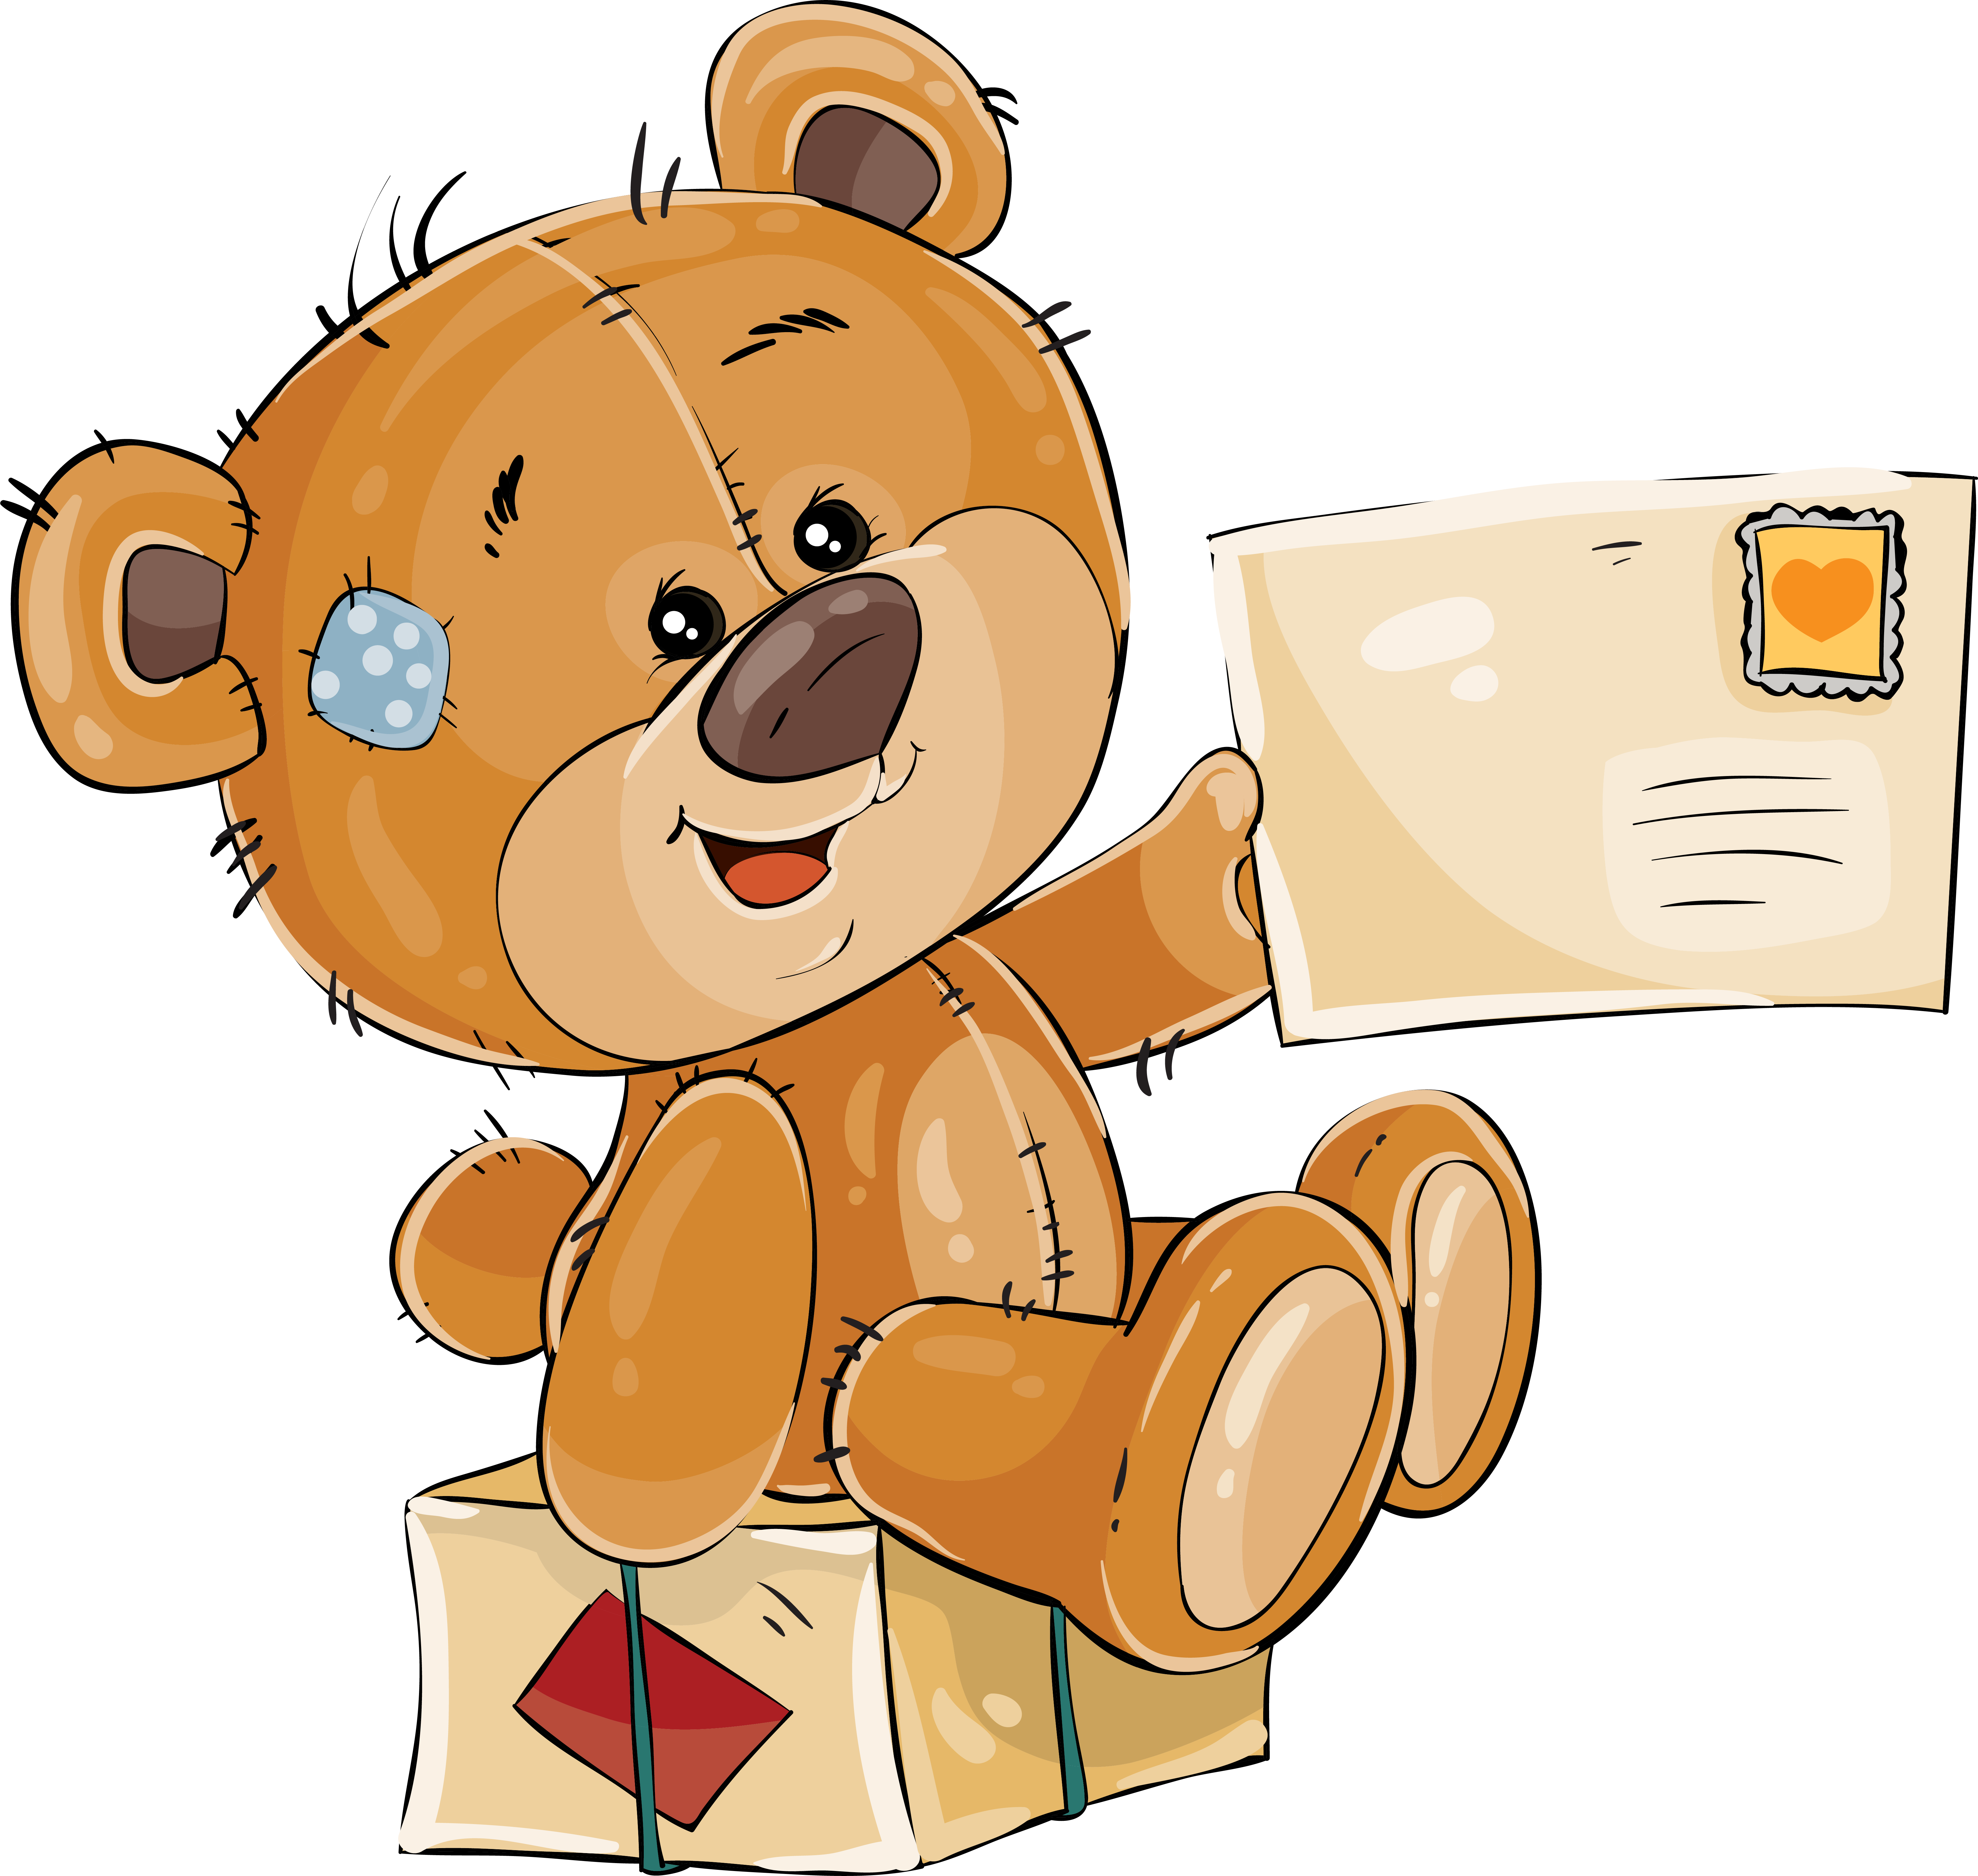 A brown teddy bear. Медвежонок мультяшный. Стикер Медвежонок. Плюшевый мишка мультяшный. Мишка с подарком мультяшный.